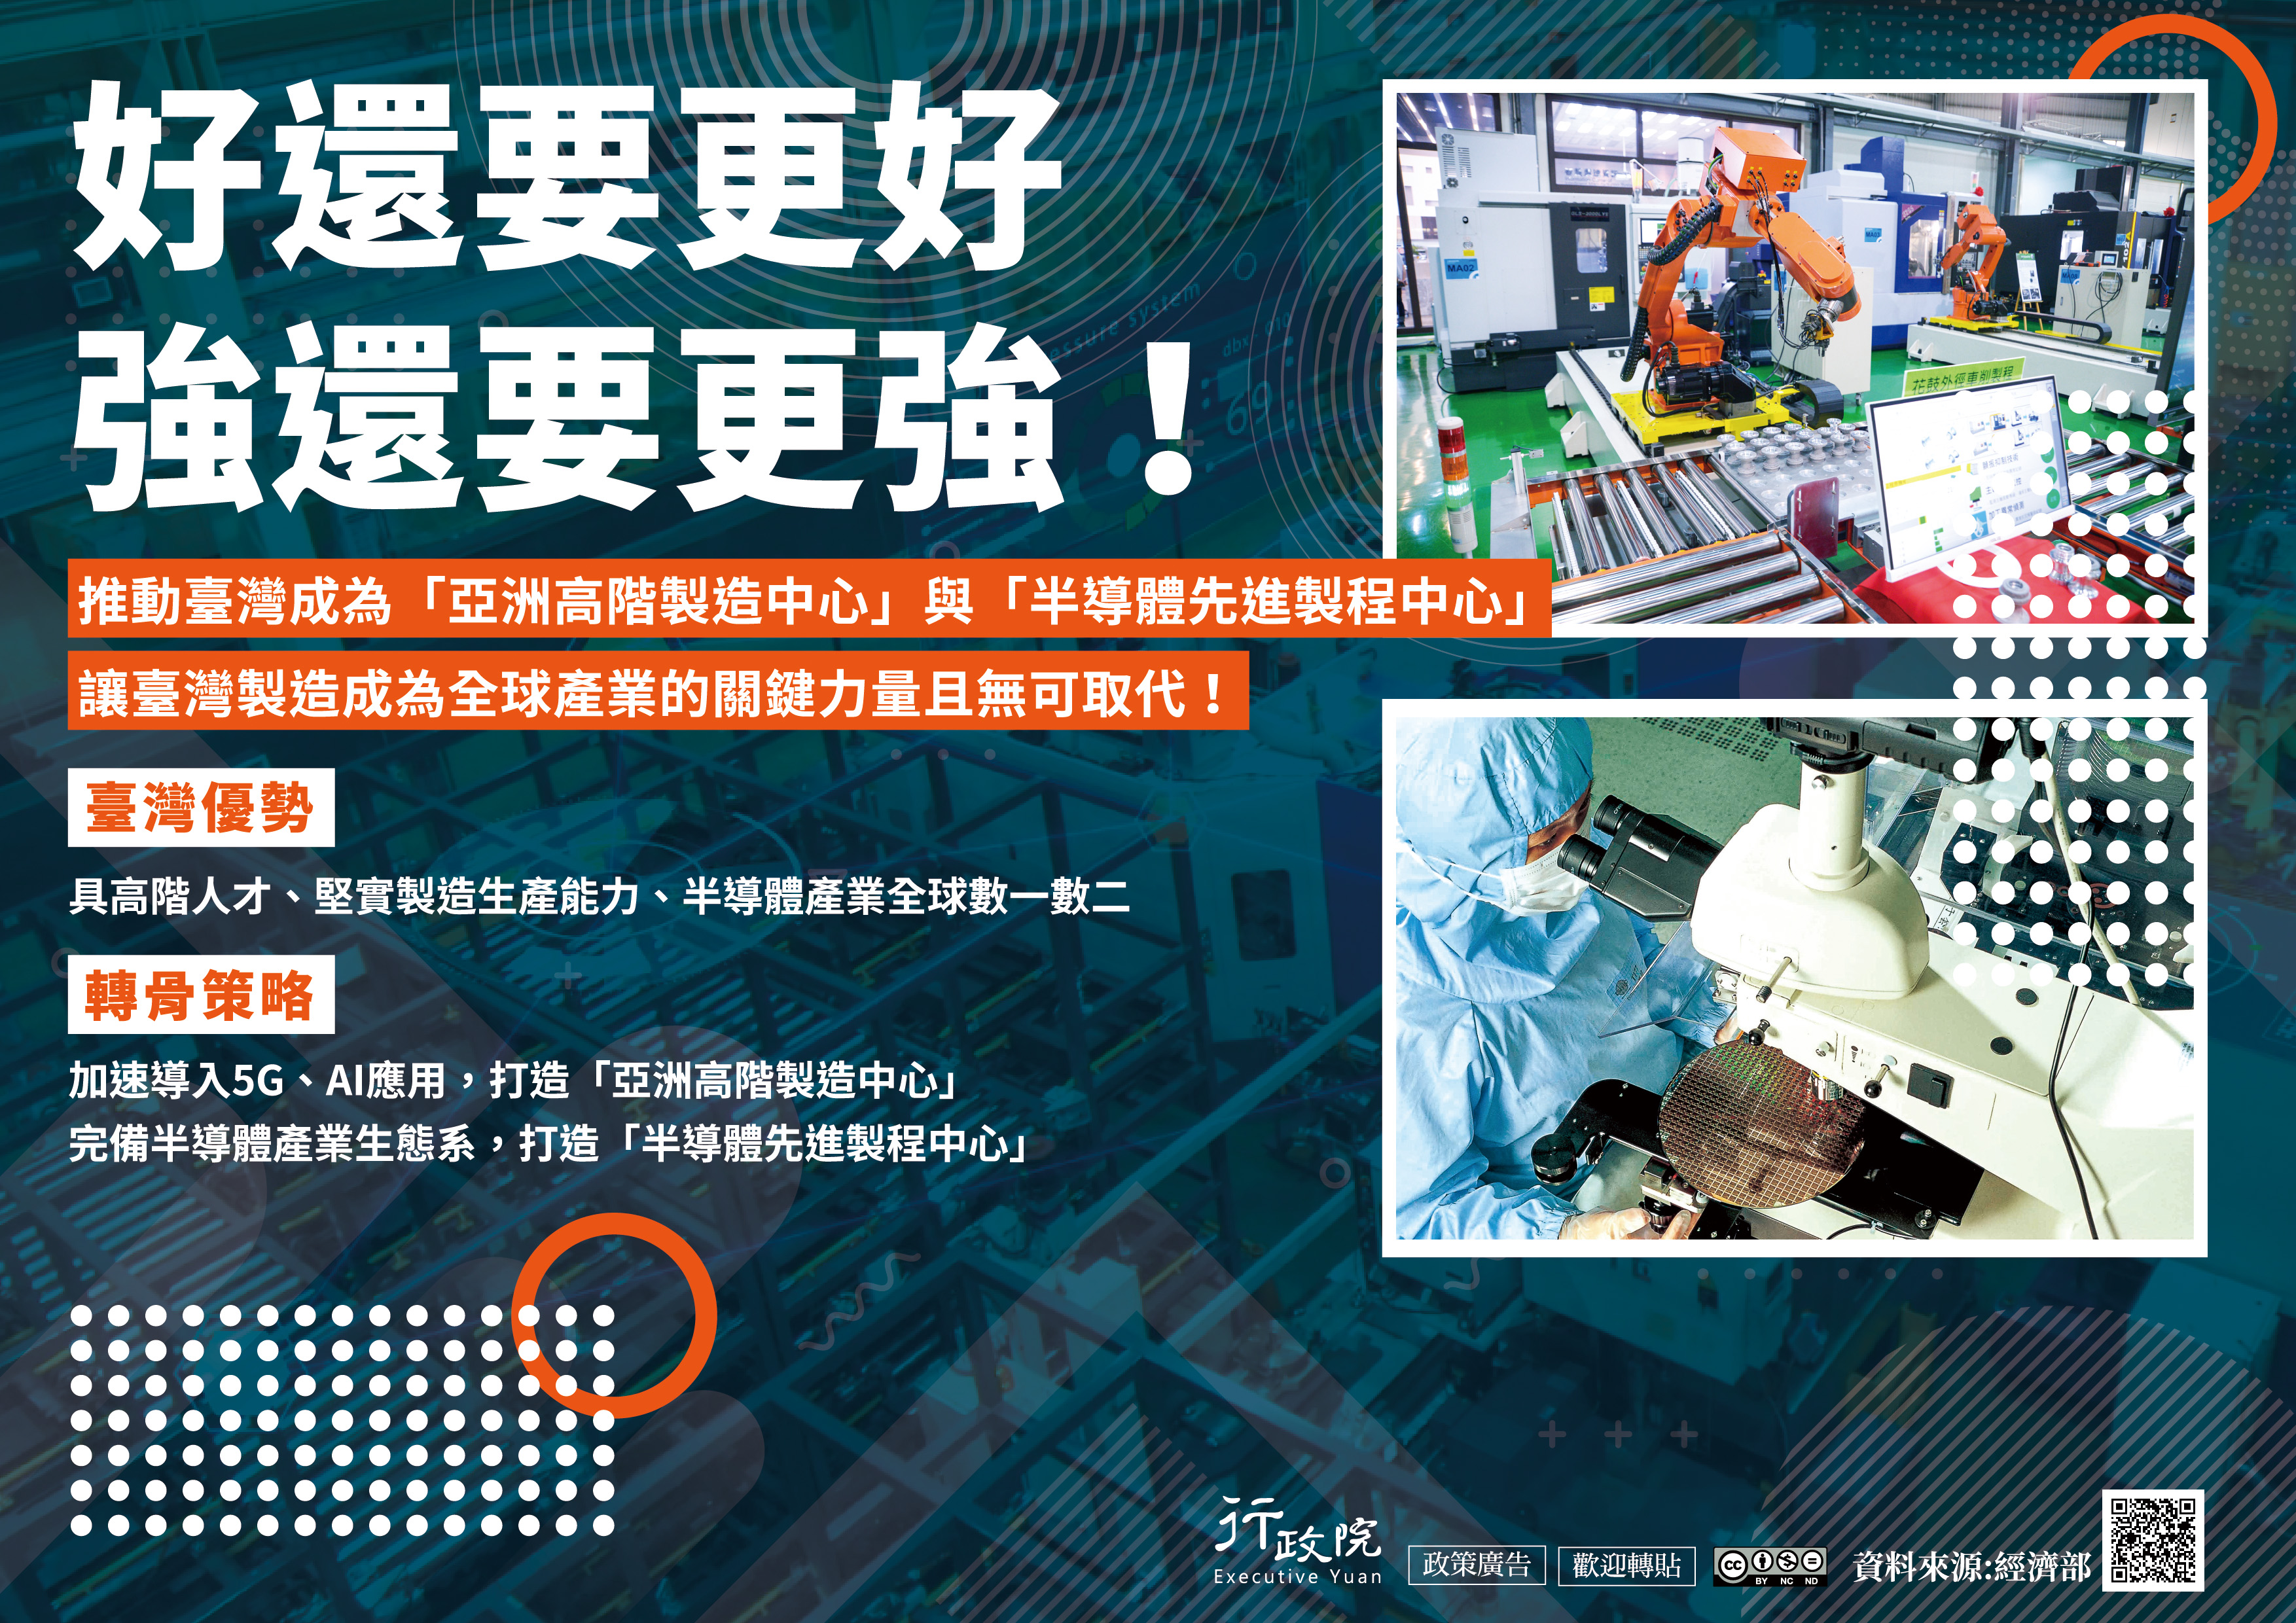 「推動臺灣成為『亞洲高階製造中心』與『半導體先進製程中心』」